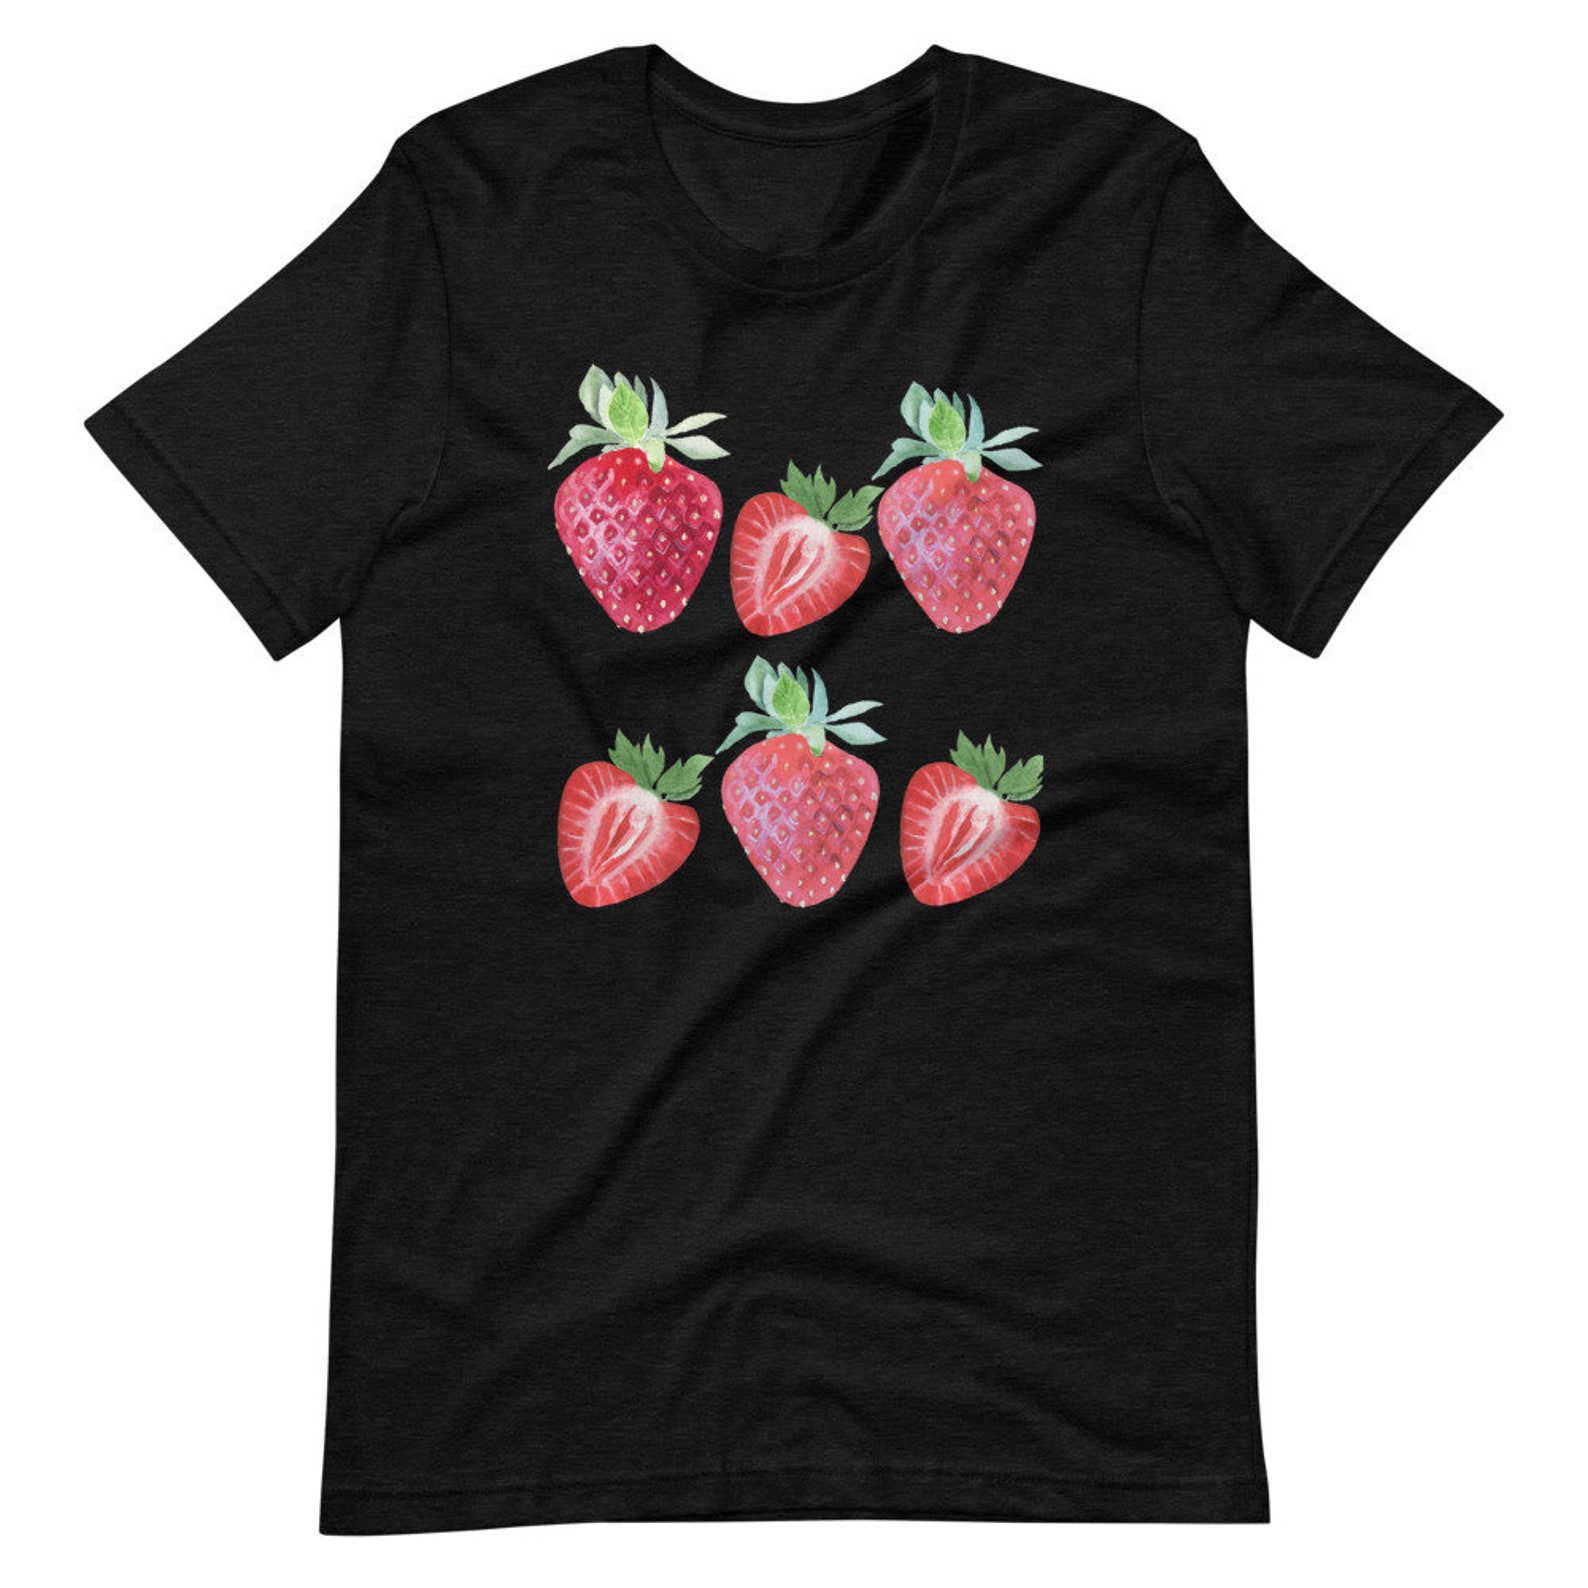 Women's Strawberry T-Shirt Strawberry Print Short-Sleeve | Etsy